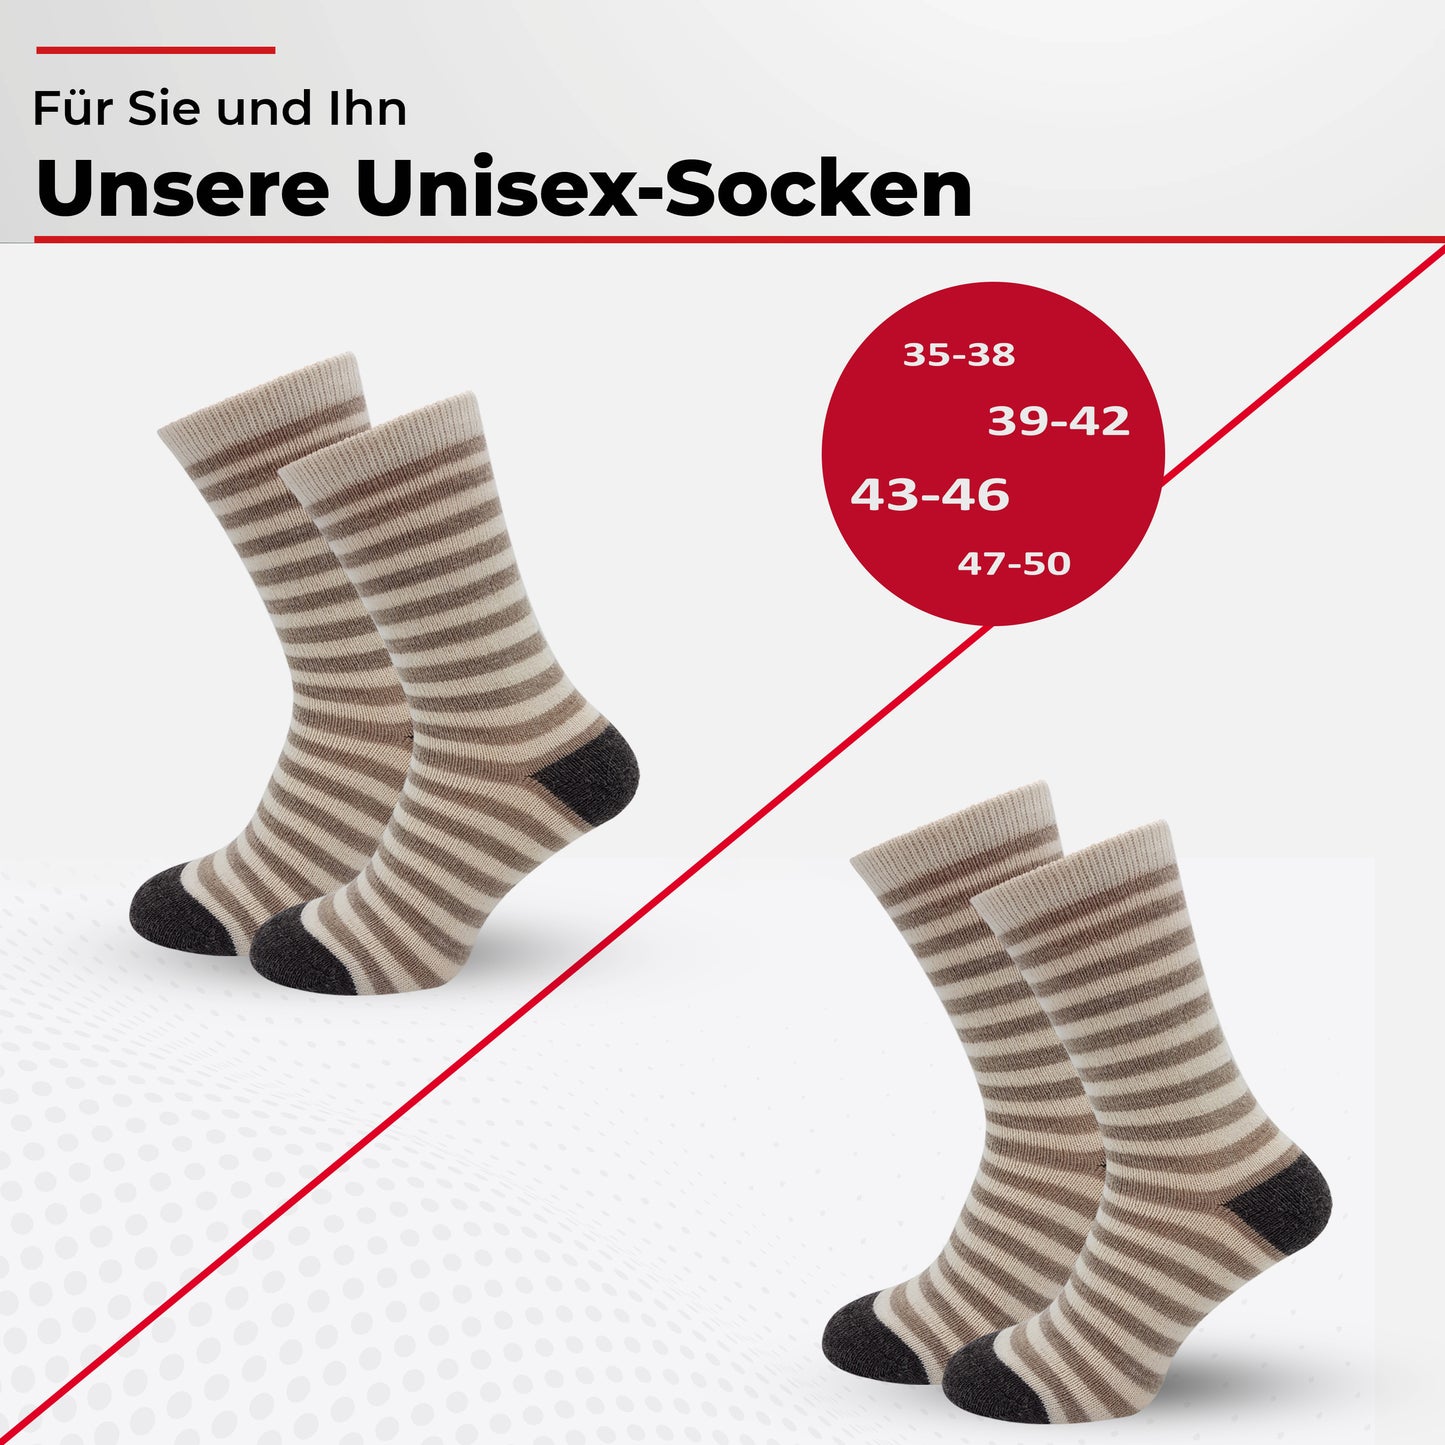 Alpaka Socken, Wollsocken (2 Paar) - Dünn, mit Ringel (Ecru/Beige/Braun)